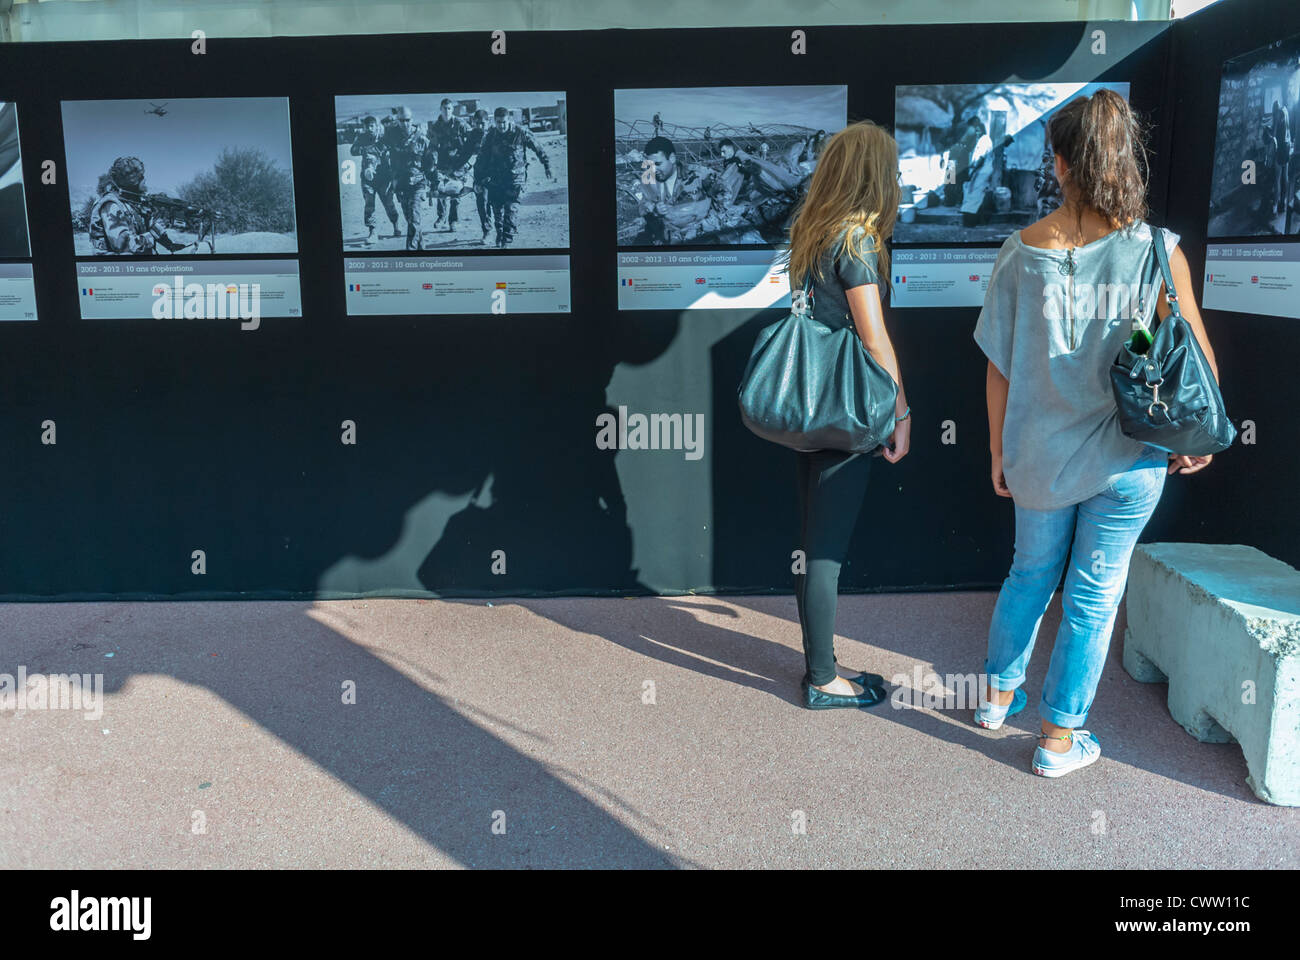 Perpignan, France, adolescents français touristes visitant l'intérieur des expositions, à Visa pour l'image, exposition internationale de photographie de photojournaliste 'Festival Off' photo Banque D'Images